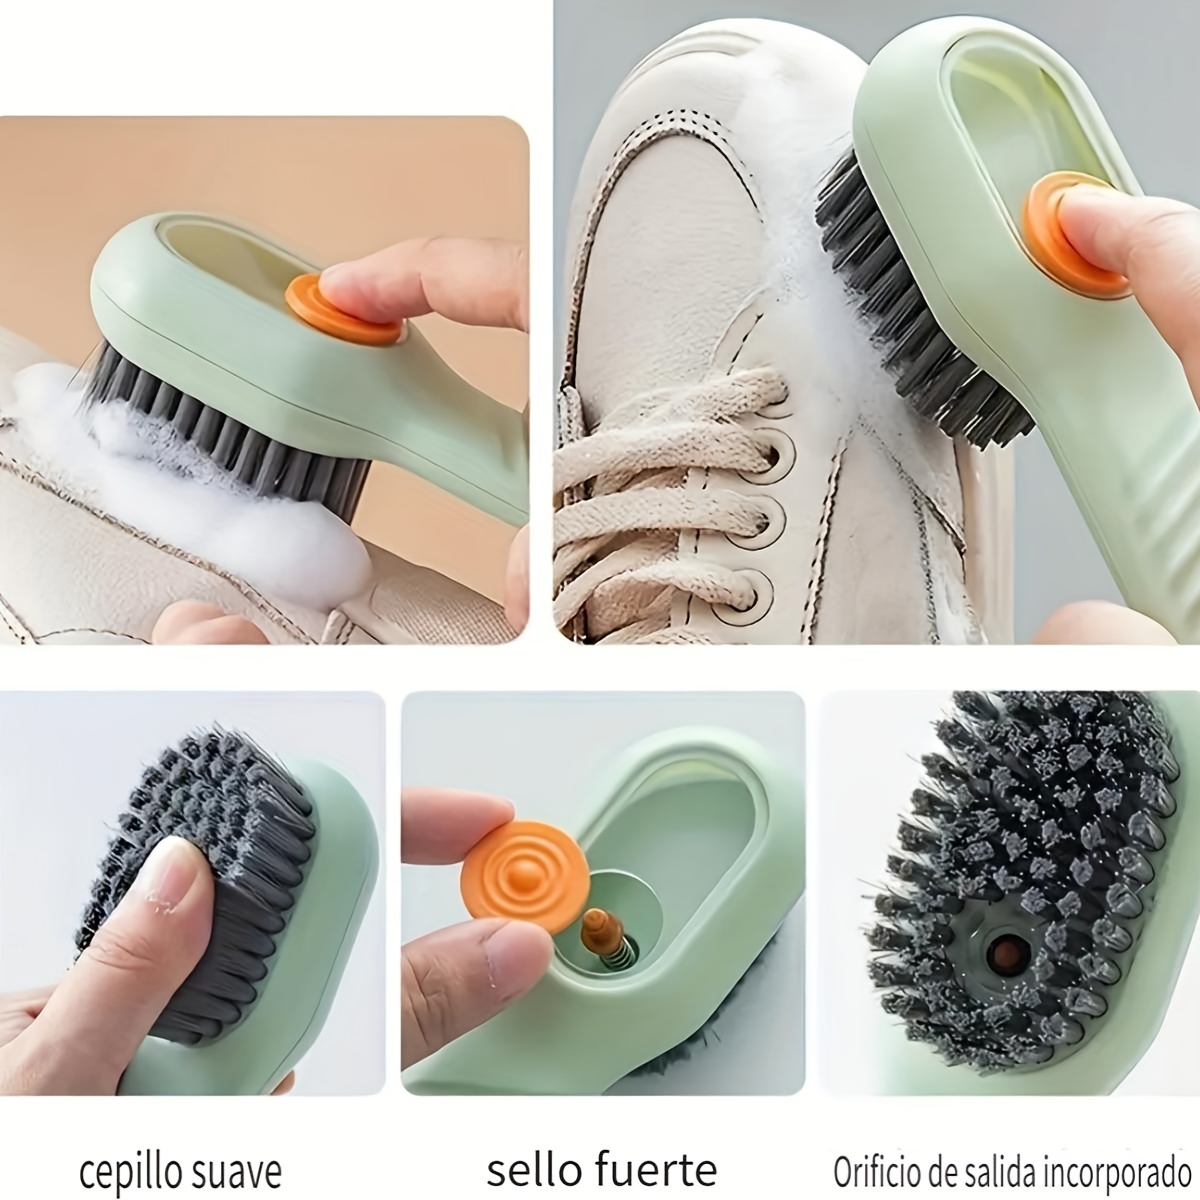 Multifunctional Liquid Shoe Brush Shoe Brush With Liquid Box - Temu